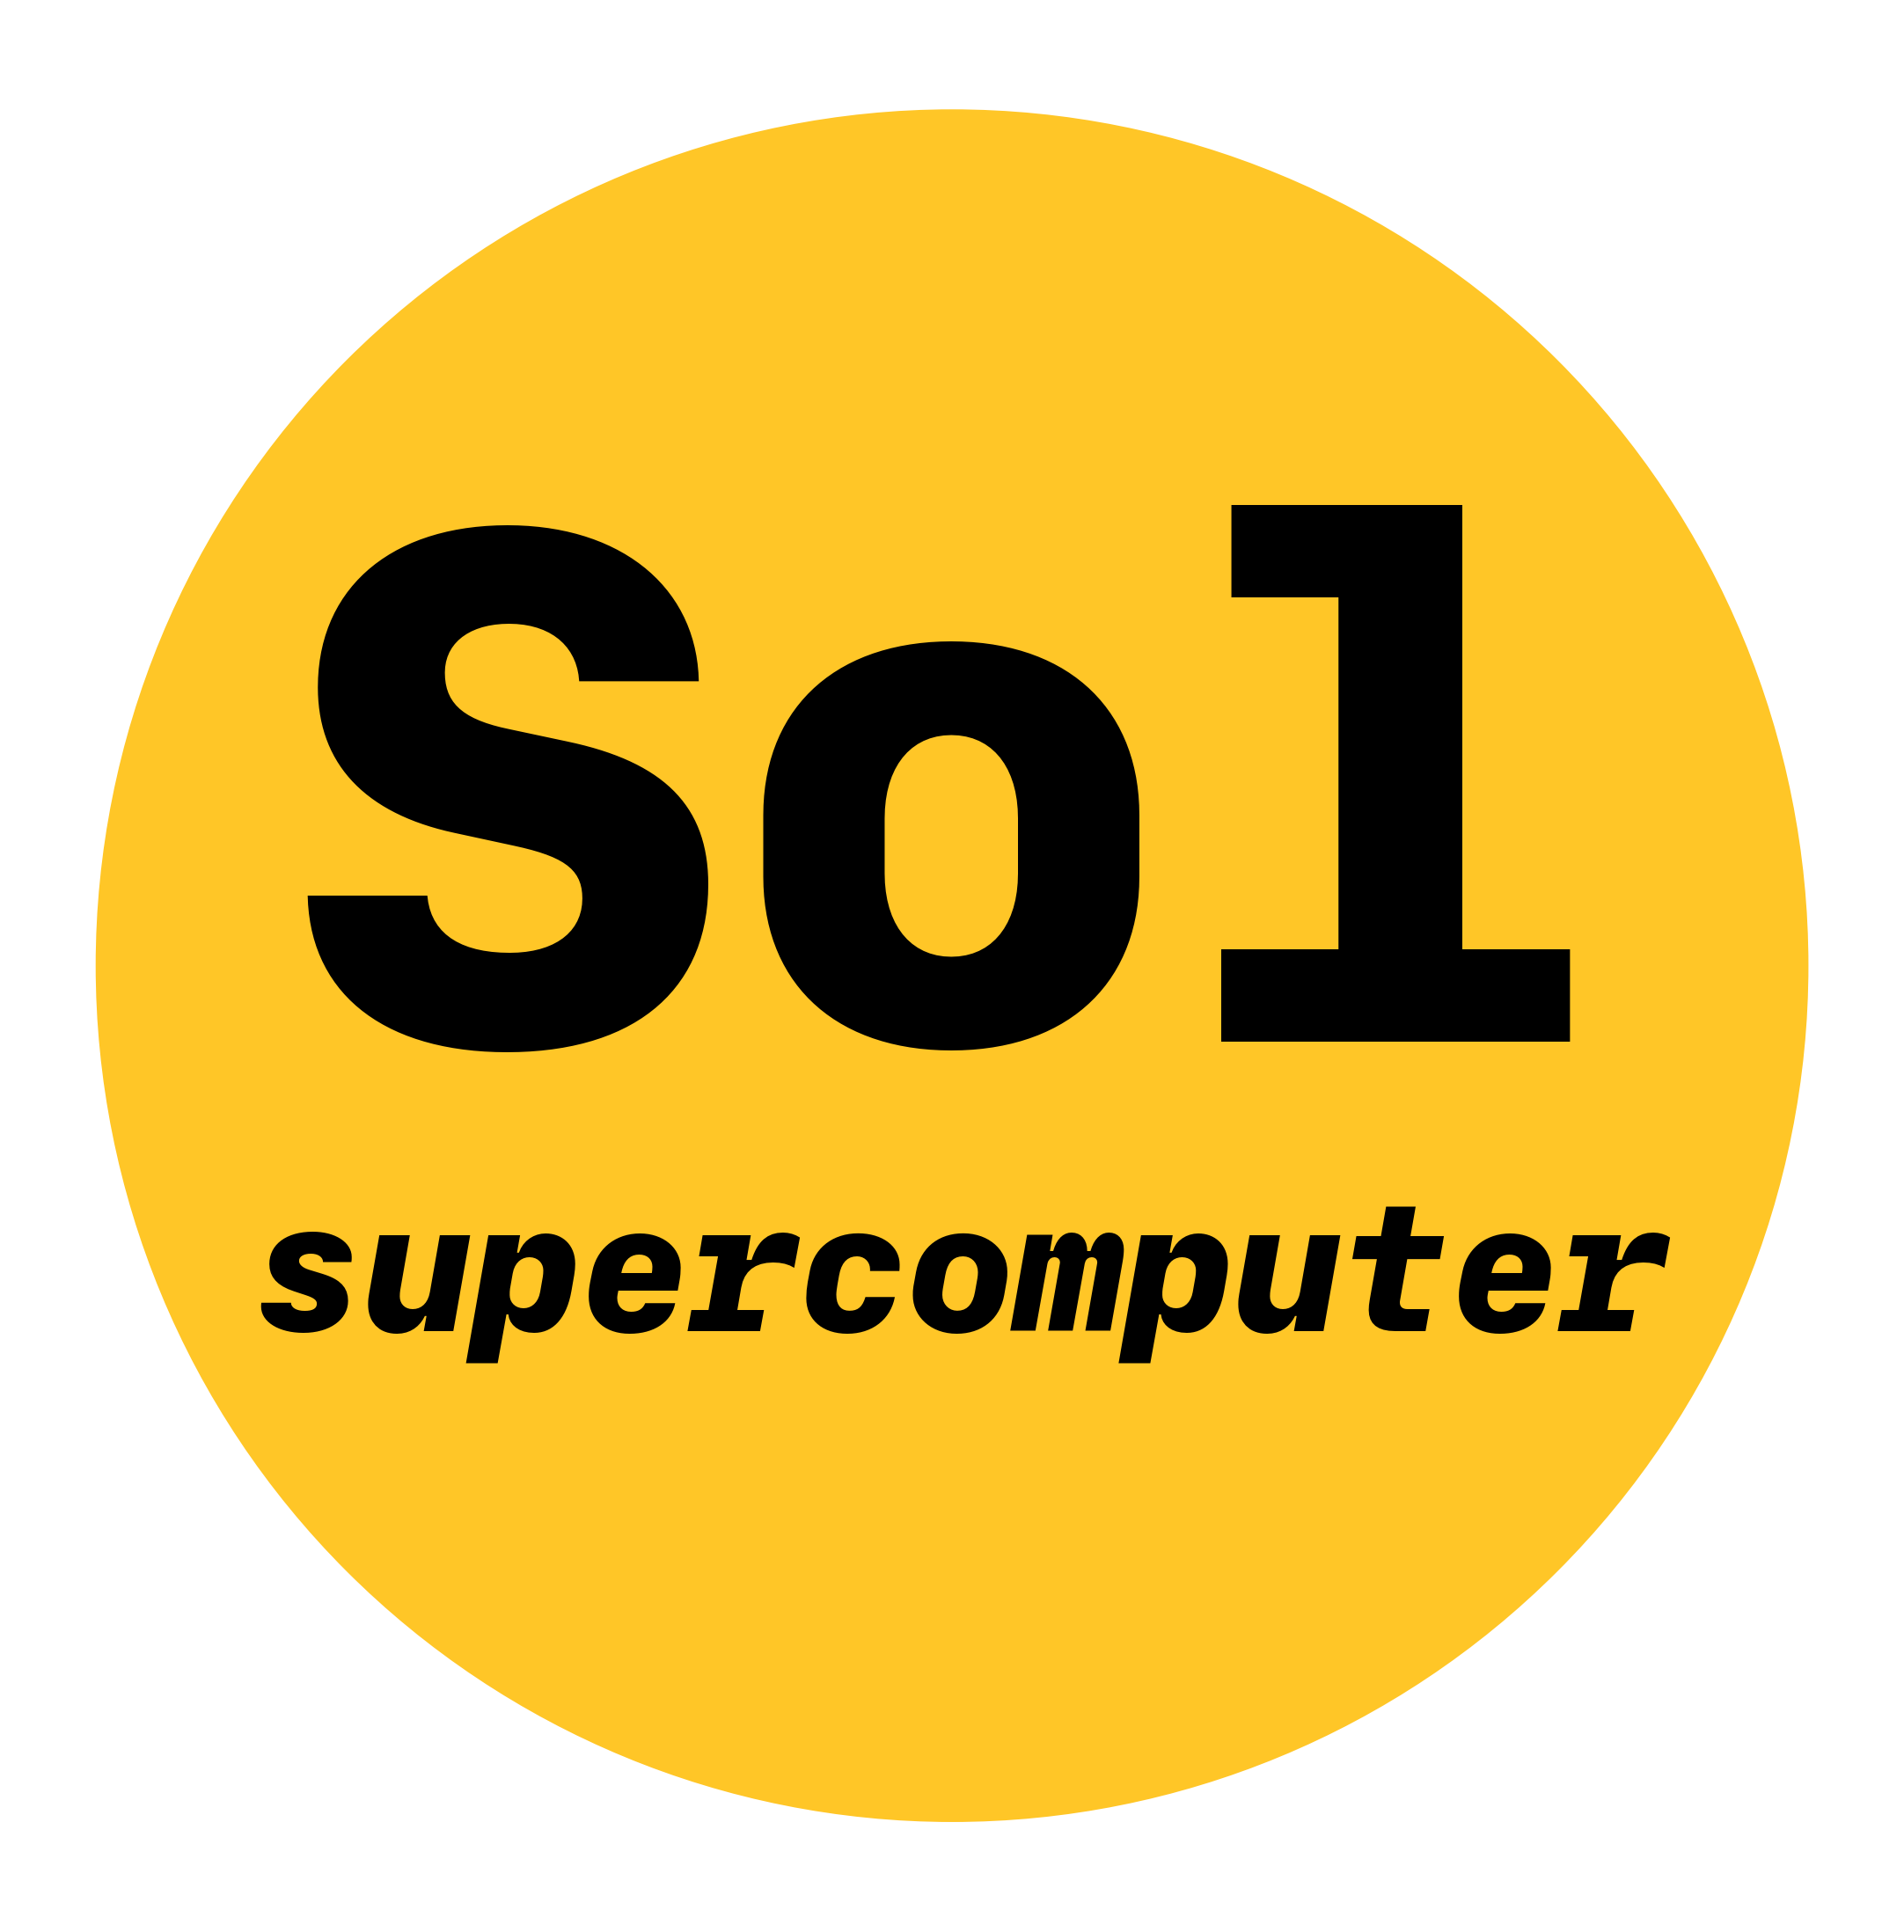 Sol supercomputer logo